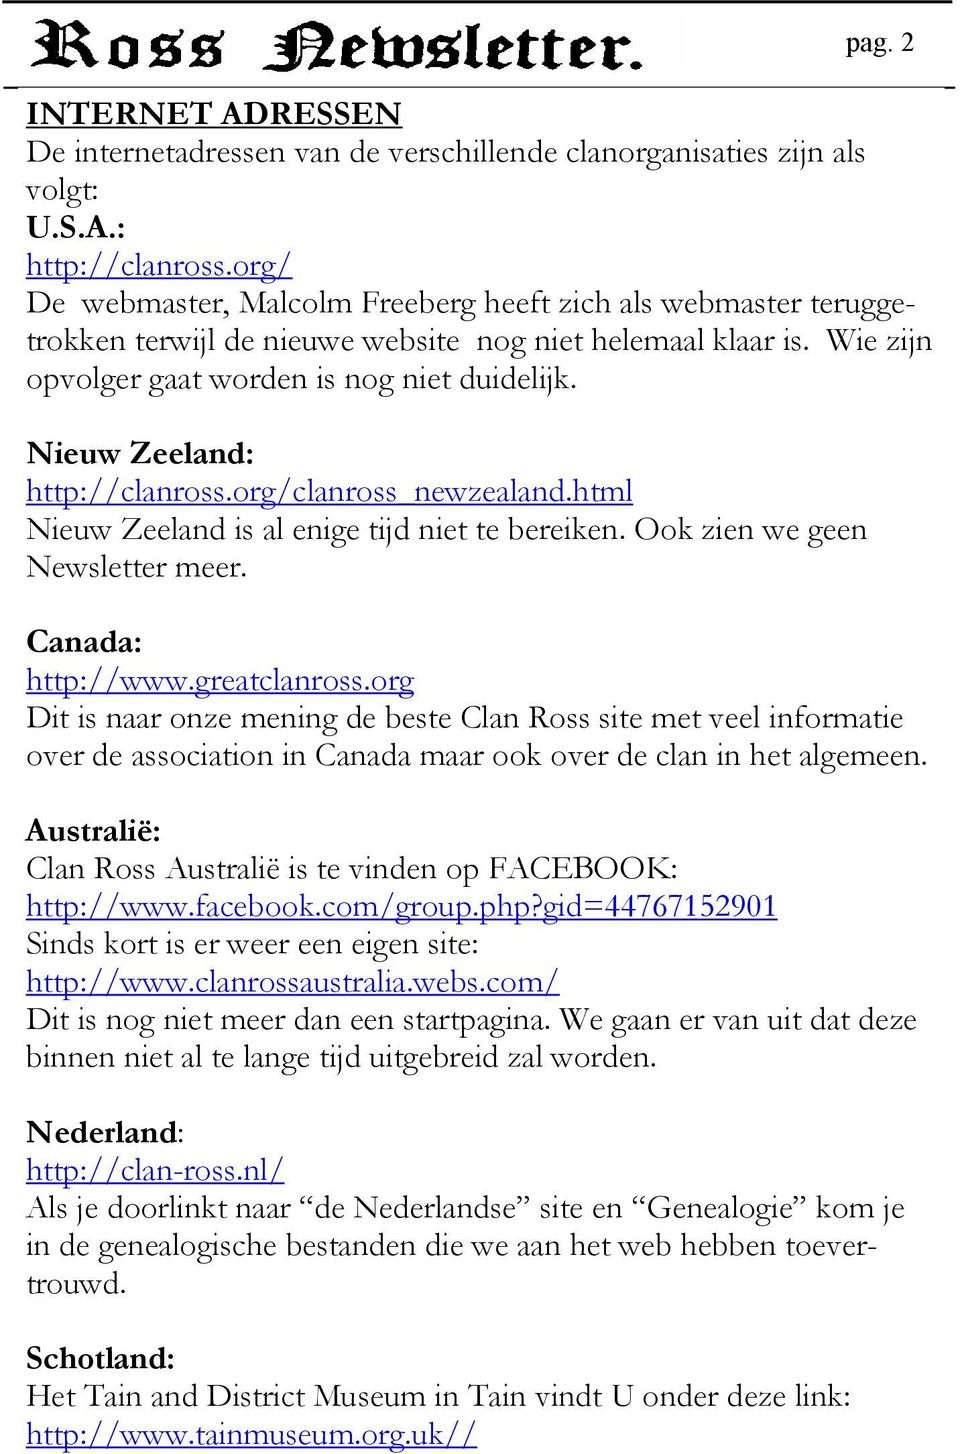 Nieuw Zeeland: http://clanross.org/clanross_newzealand.html Nieuw Zeeland is al enige tijd niet te bereiken. Ook zien we geen Newsletter meer. Canada: http://www.greatclanross.